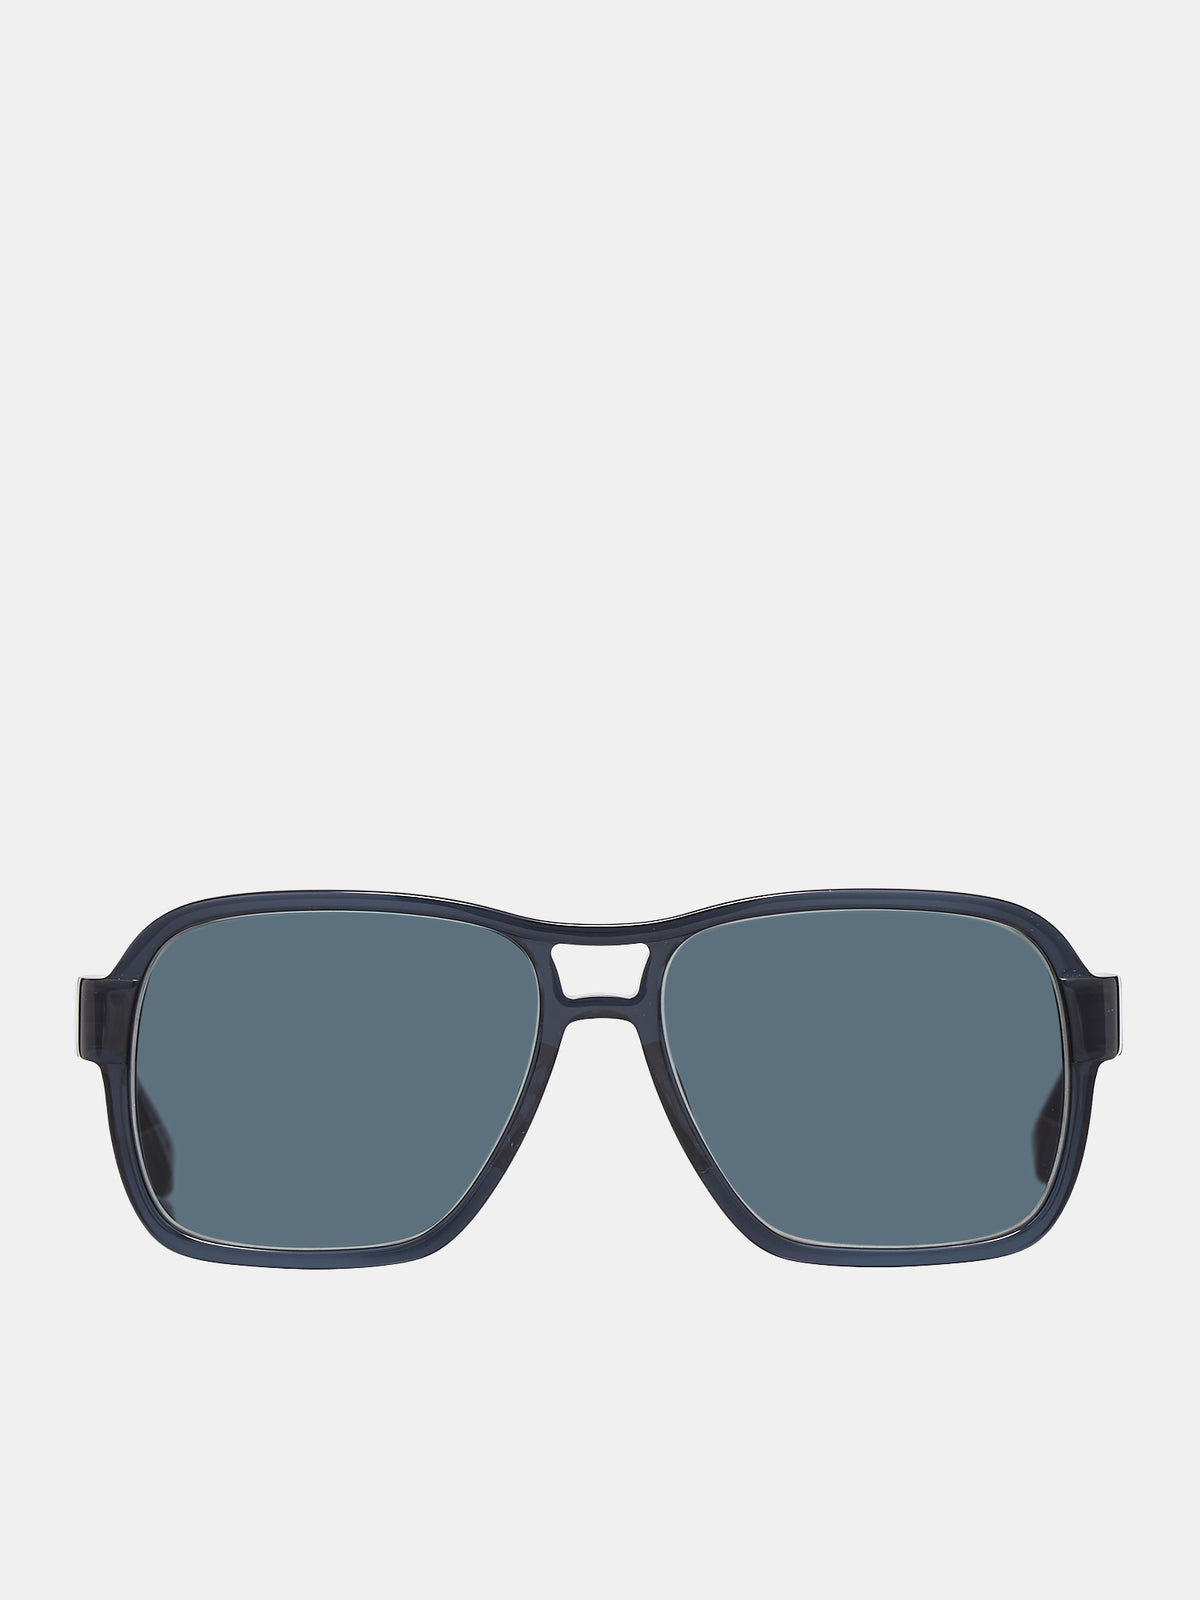 Herbie Sunglasses (TSJ-HERBIE-DARK-GRAY-GRAY4)